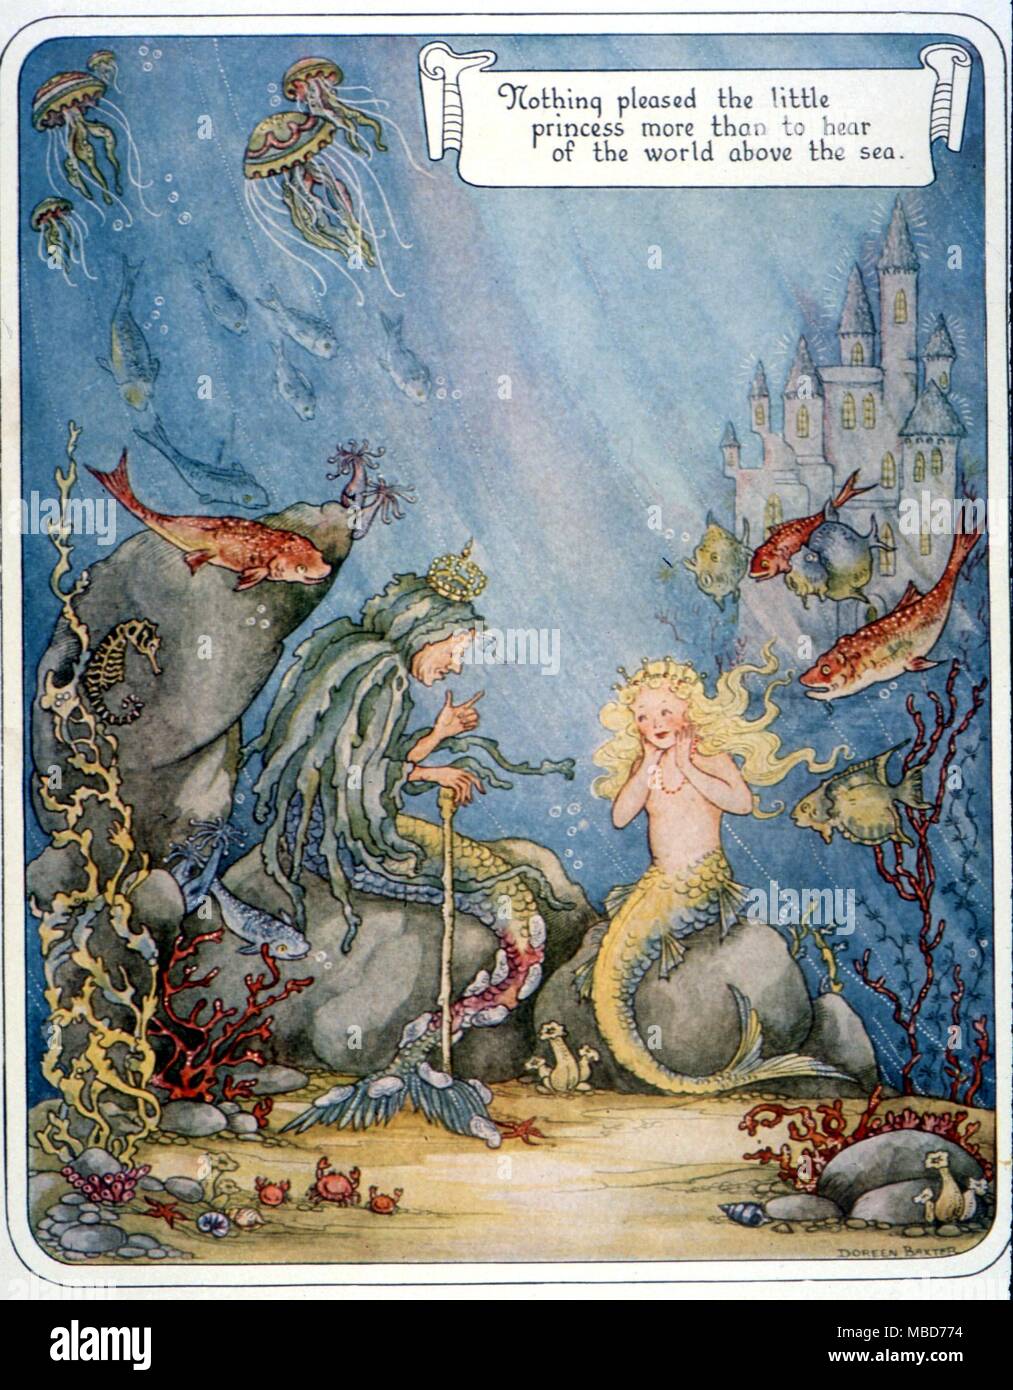 Fairy Tales - La Sirenetta ascoltando storie del mondo al di sopra del mare - illustrazione di Doreen Baxte dal Fairy-Tale Omnibus c.1949 Foto Stock